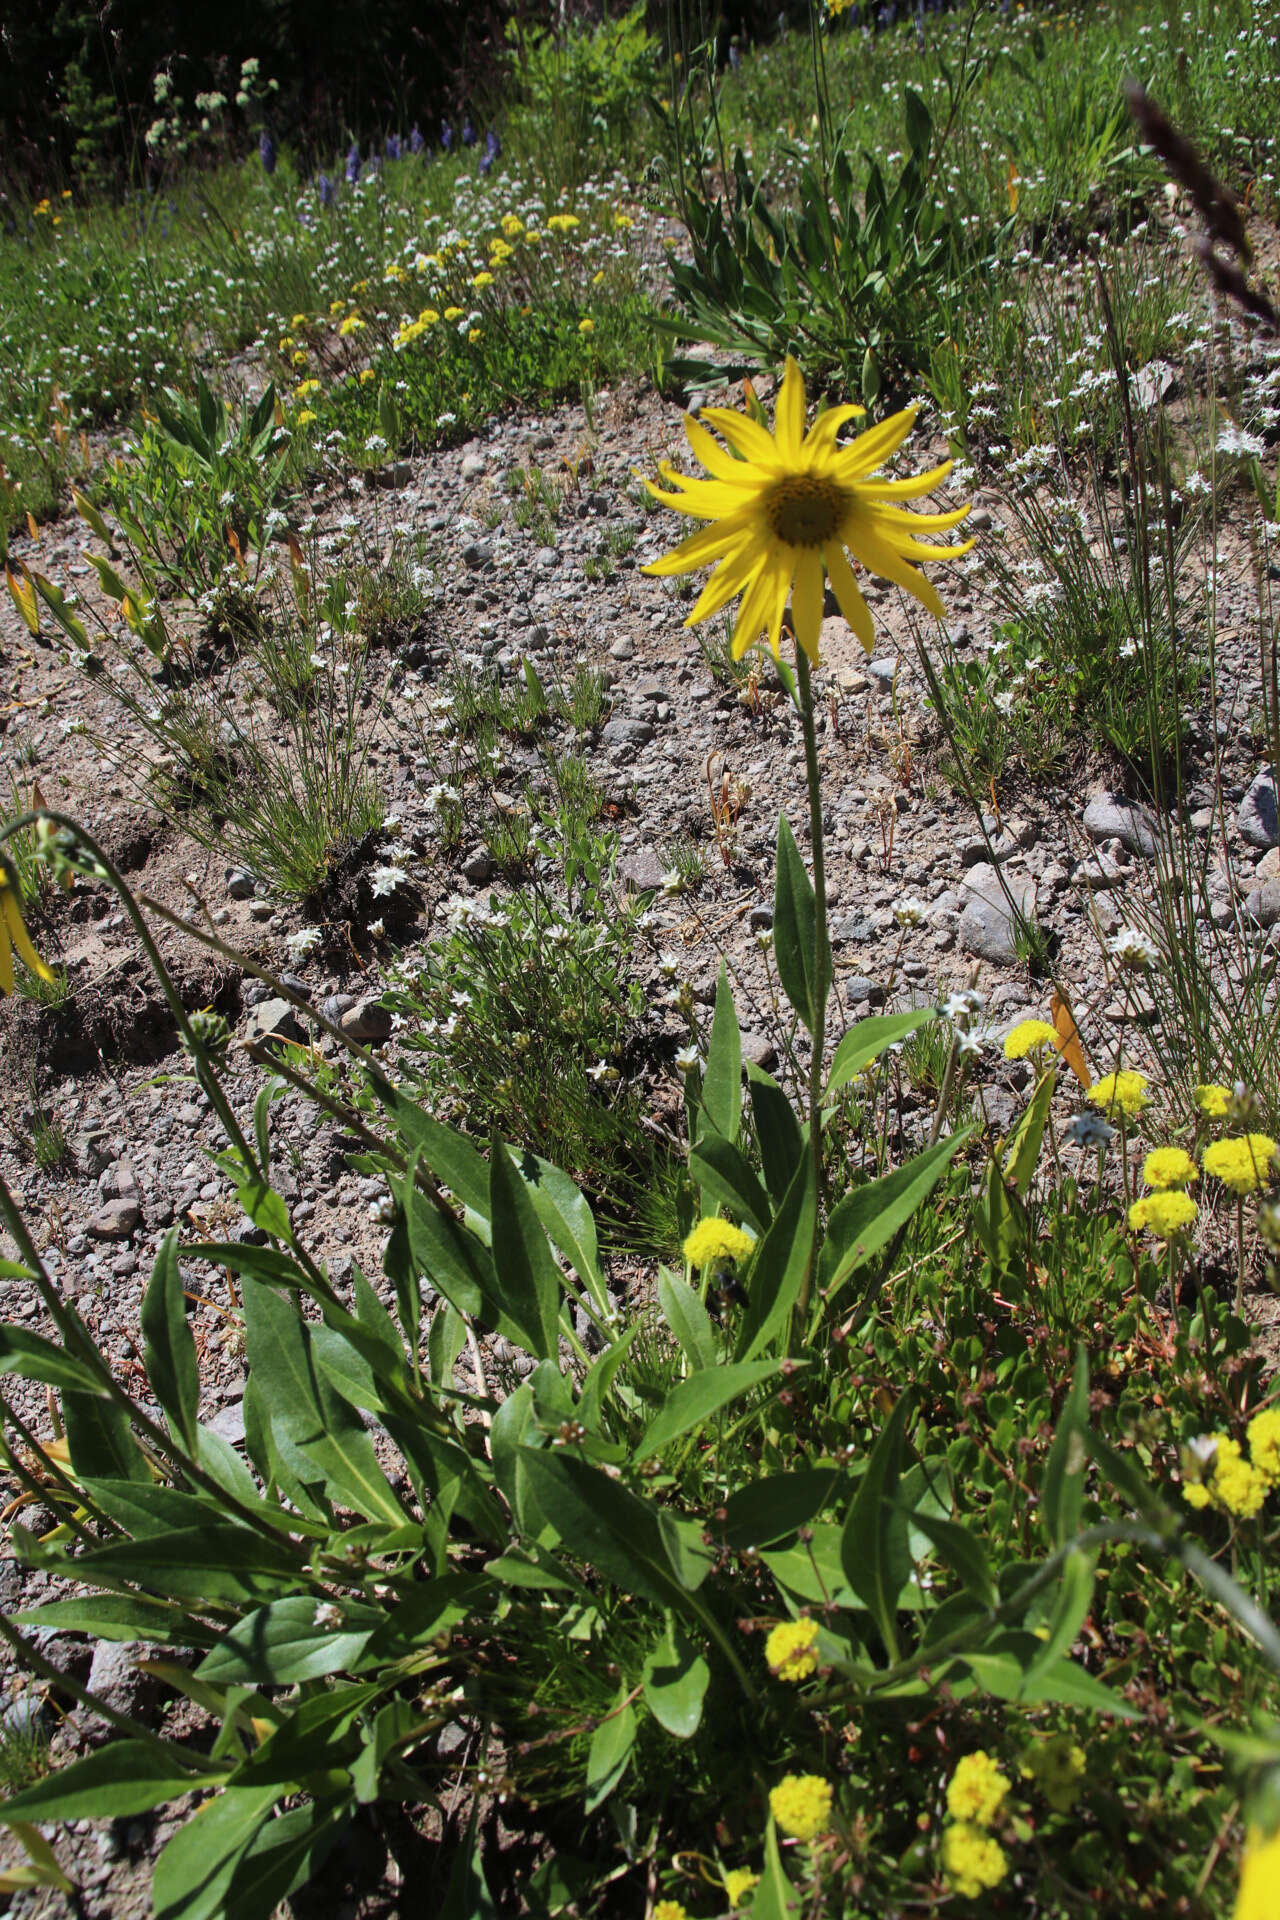 Image of Aspen Sunflower